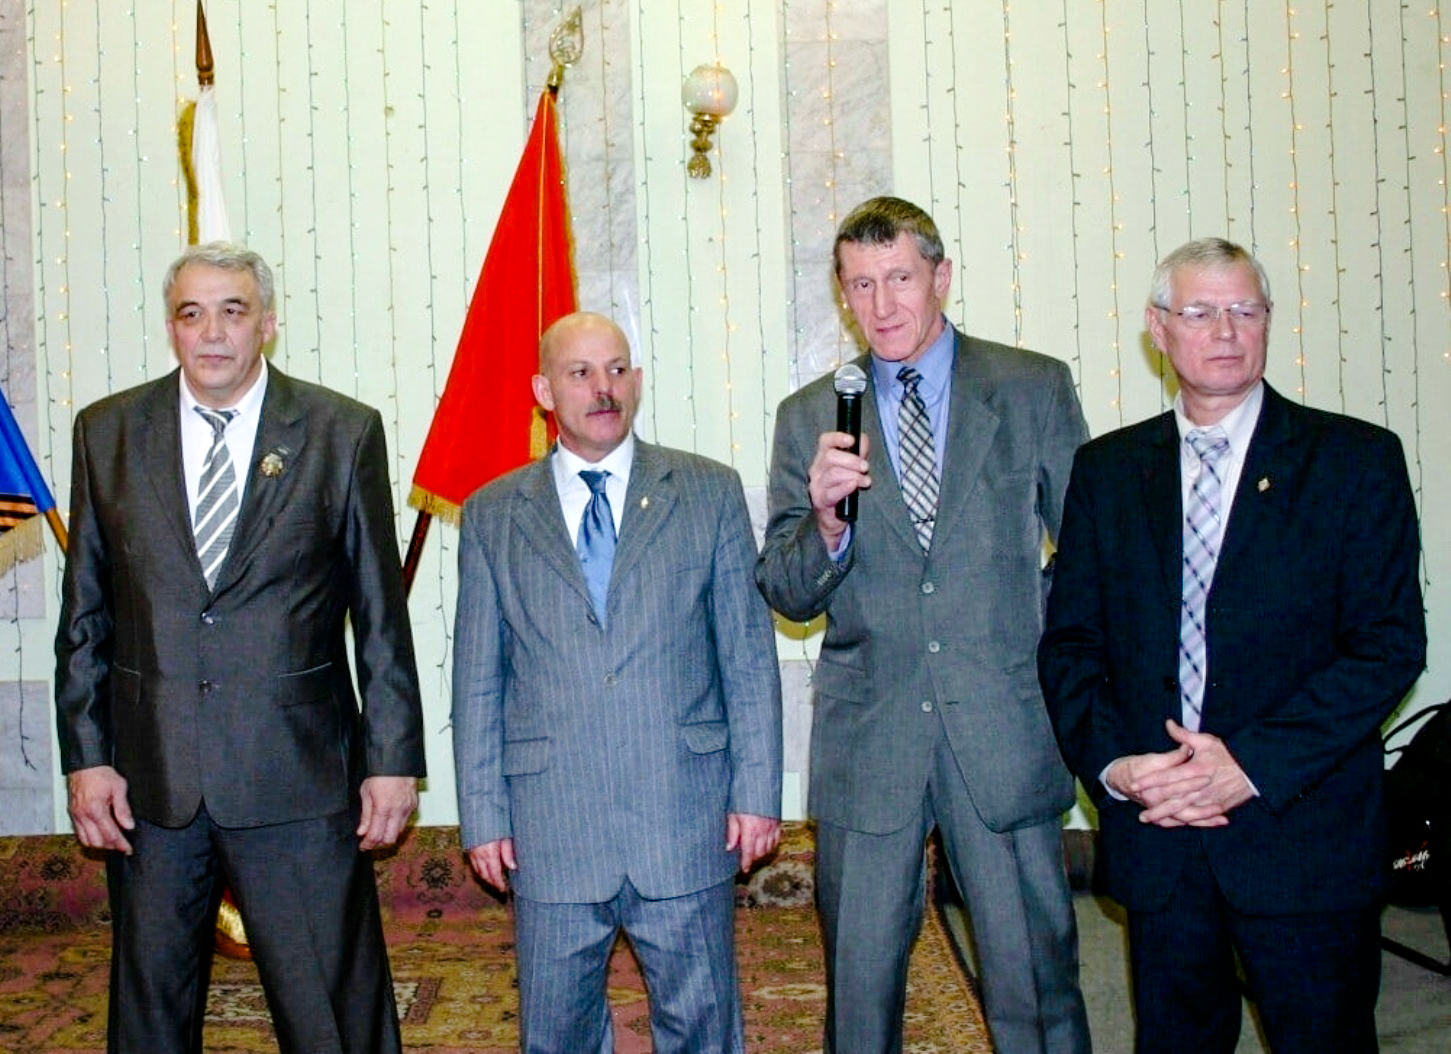 Участники декабрьских событий 1979 года в Кабуле: Сергей Голов, Владимир Тарасенко, Виктор Блинов и Сергей Кувылин. 27 декабря 2009 года